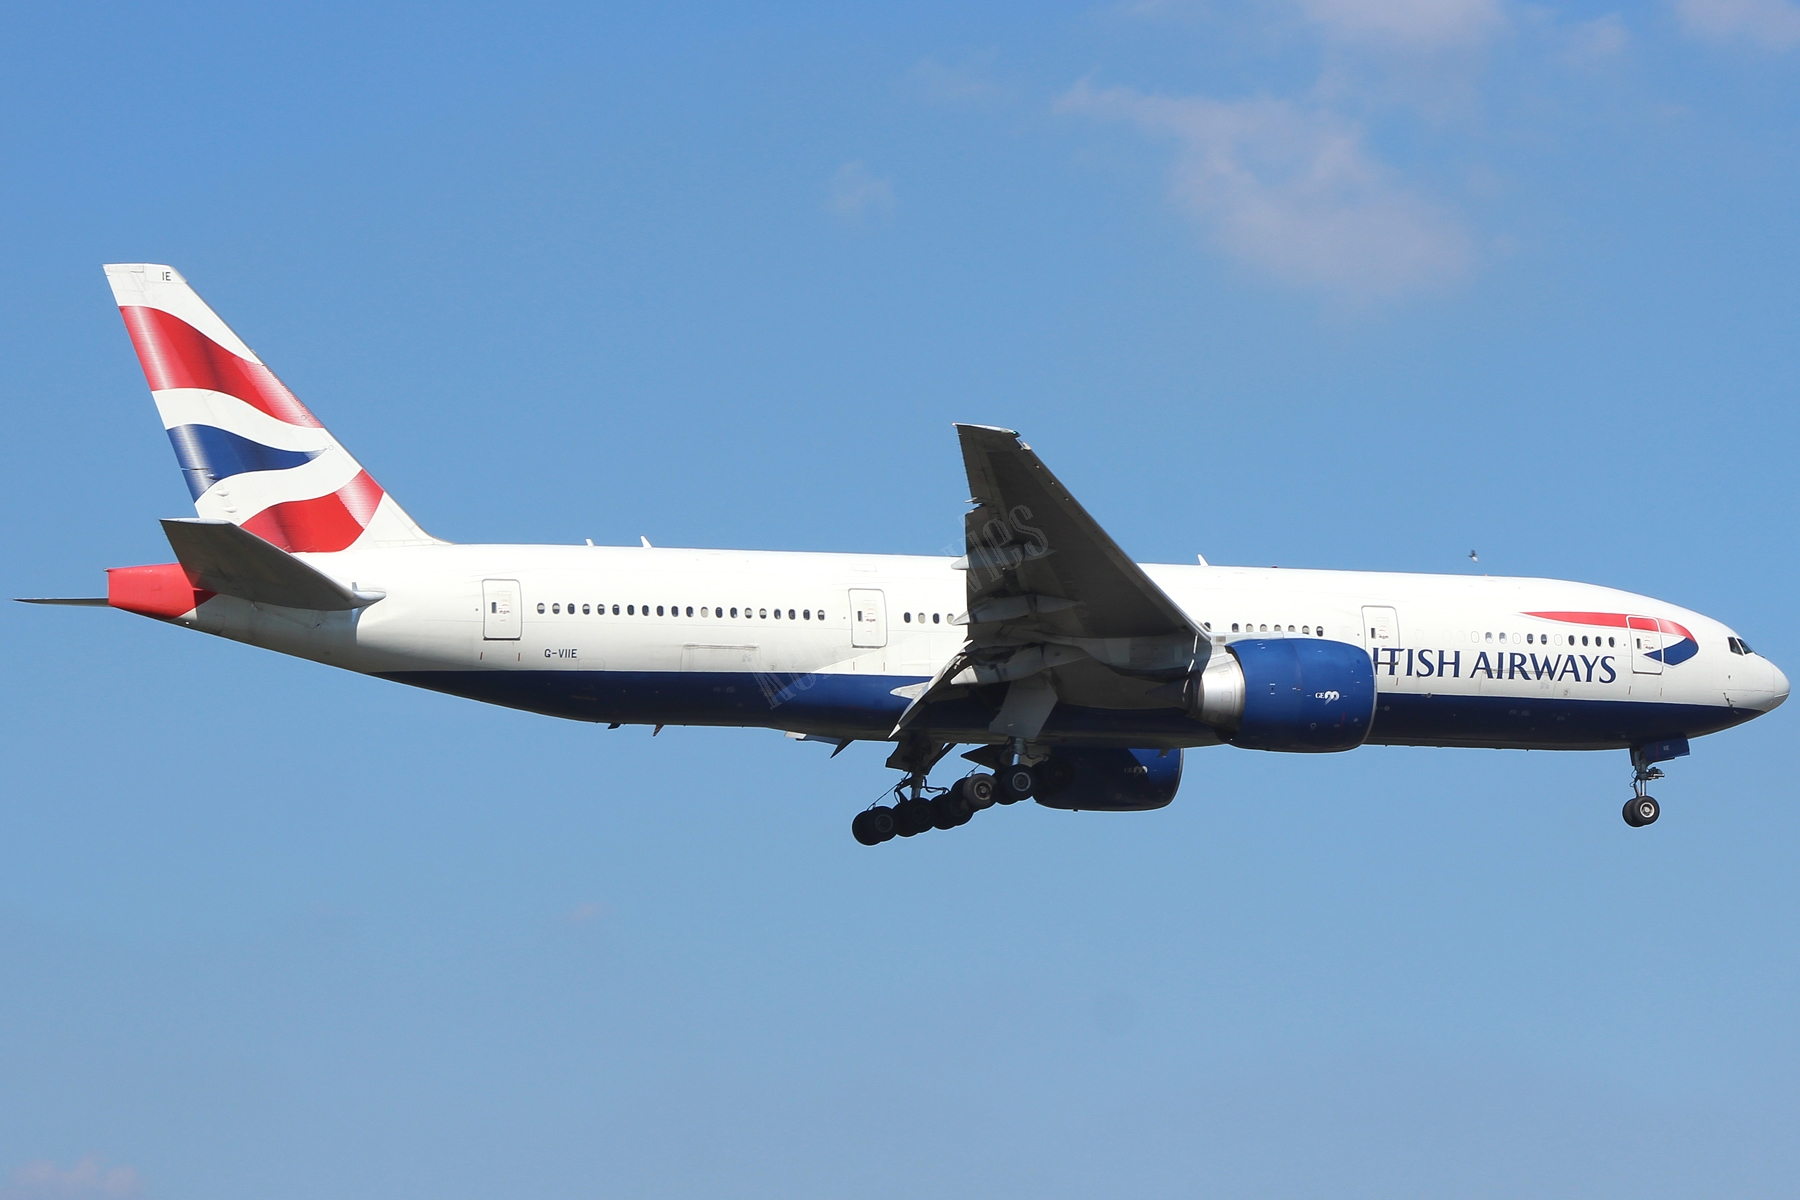 British Airways 777 G-VIIE